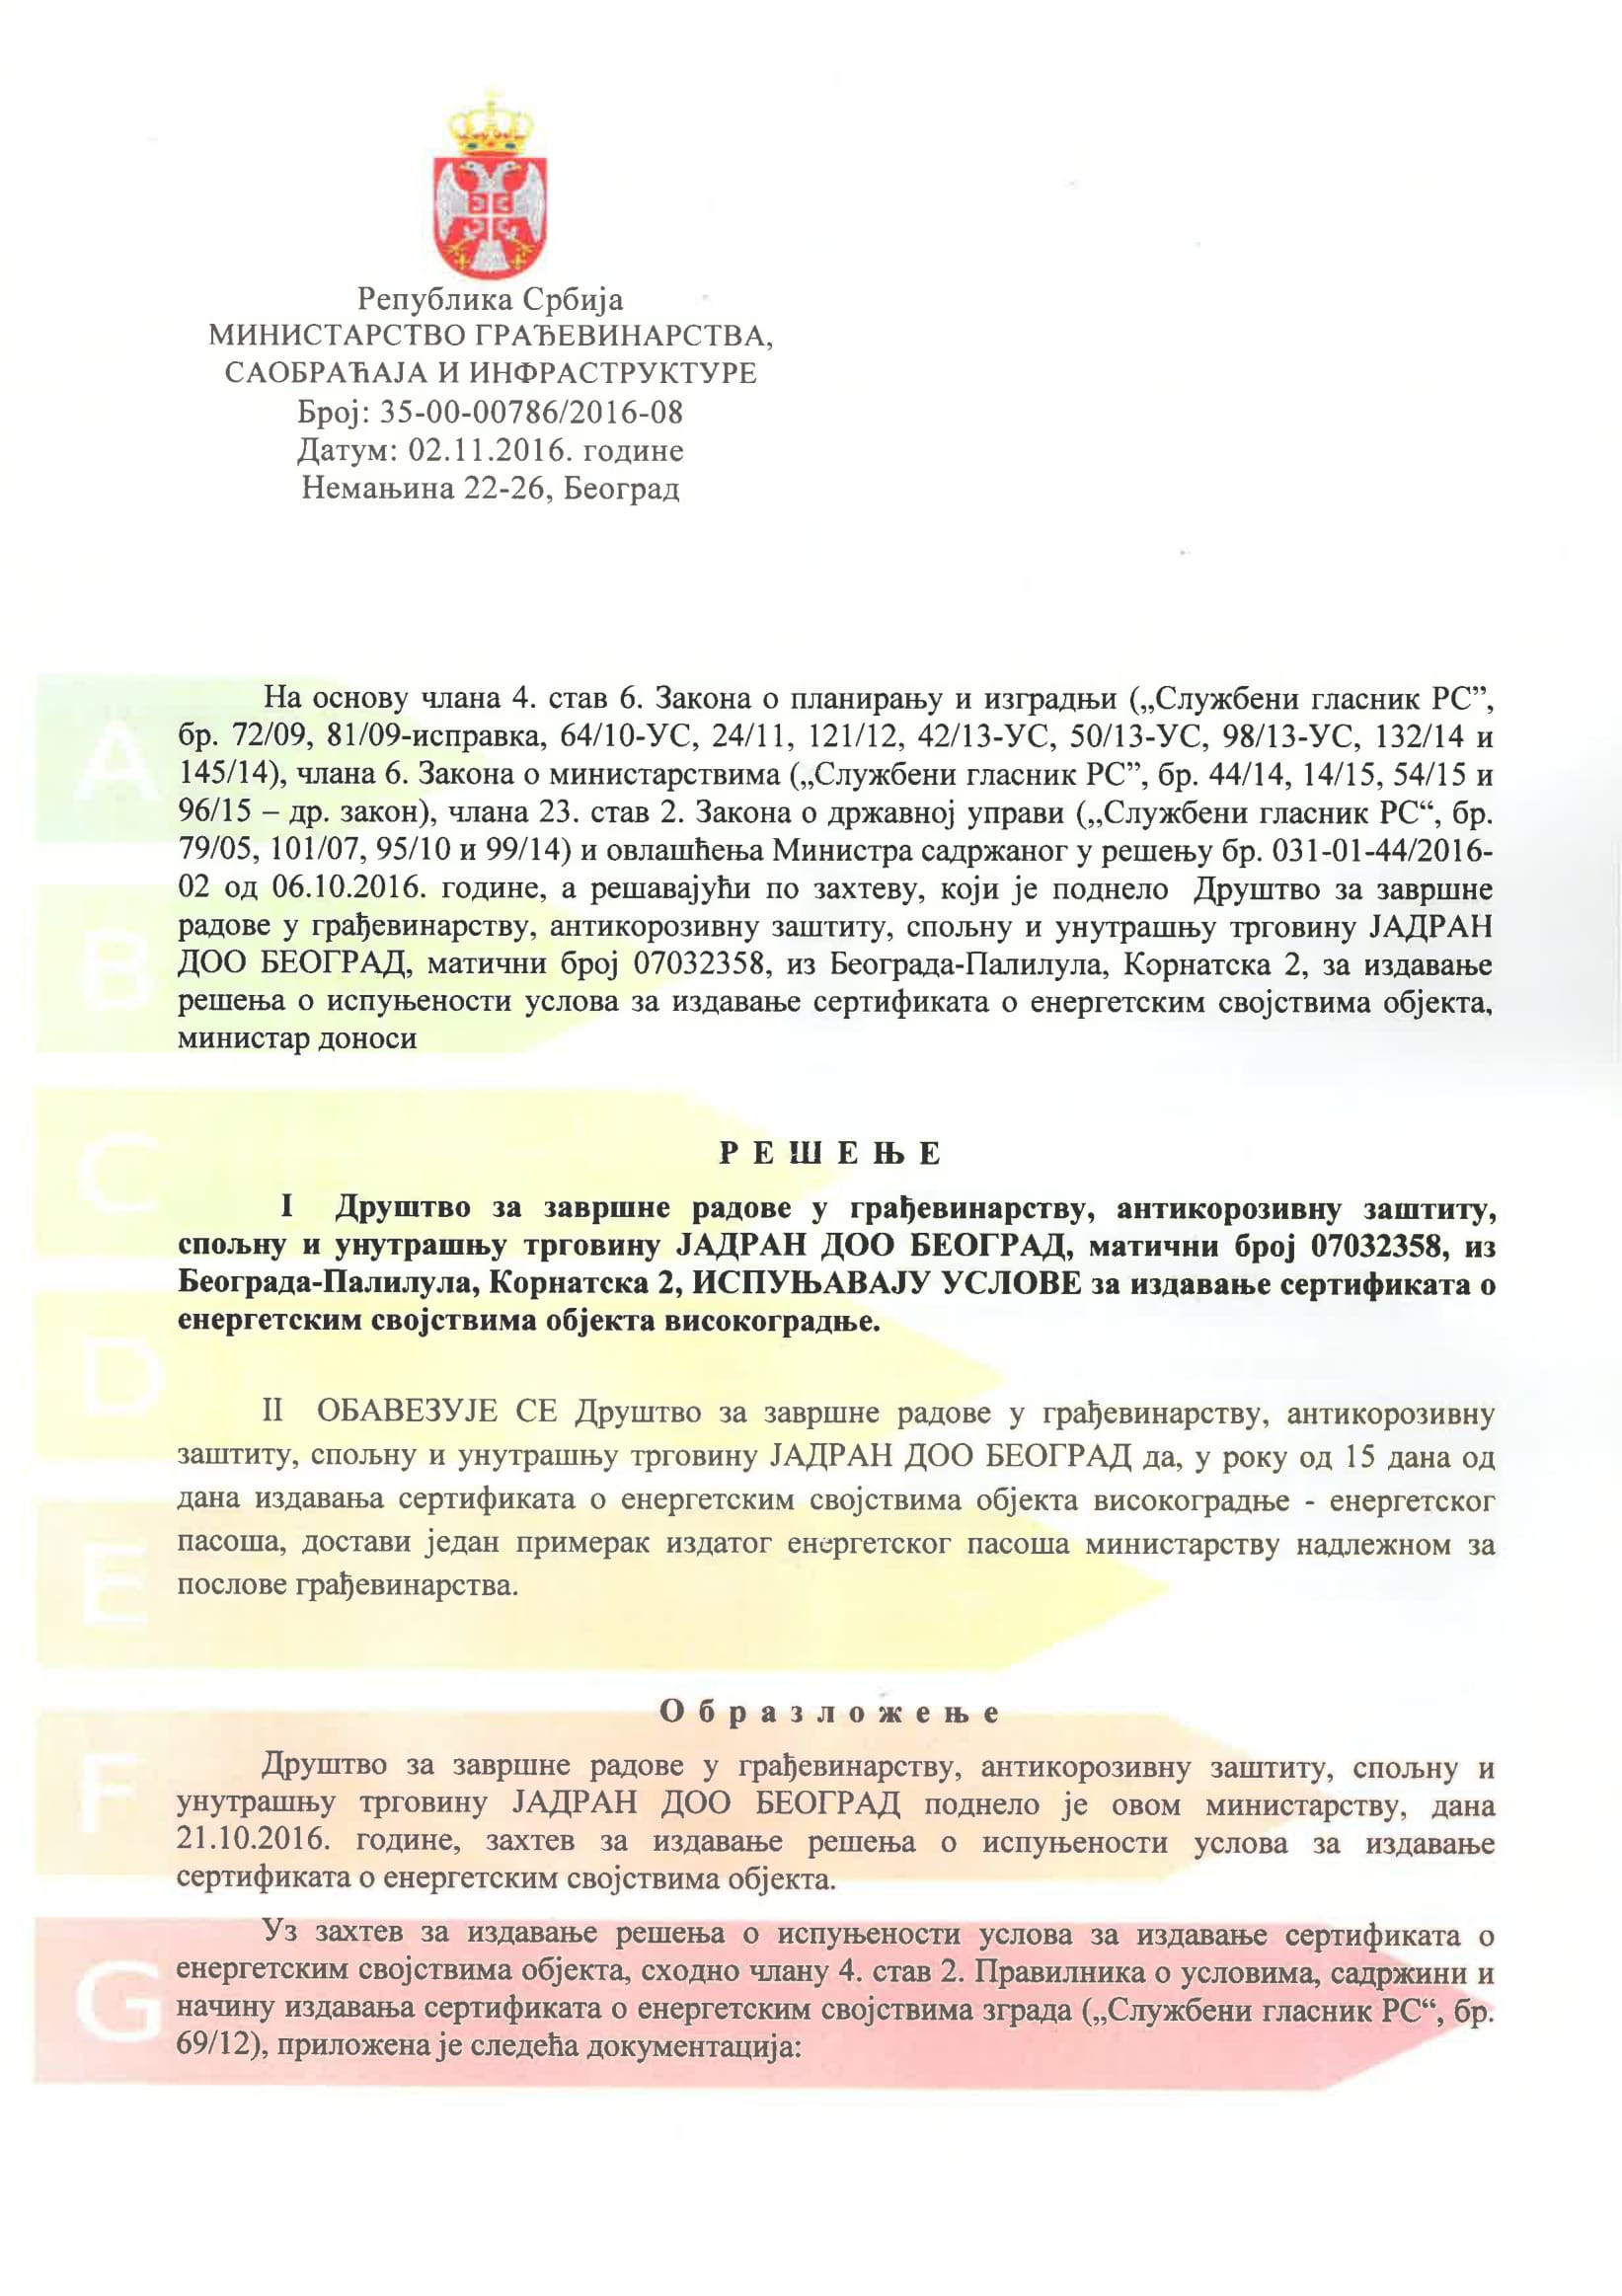 Licenca za izdavanje sertifikata o energetskim svojstvima objekata - Jadran d.o.o.